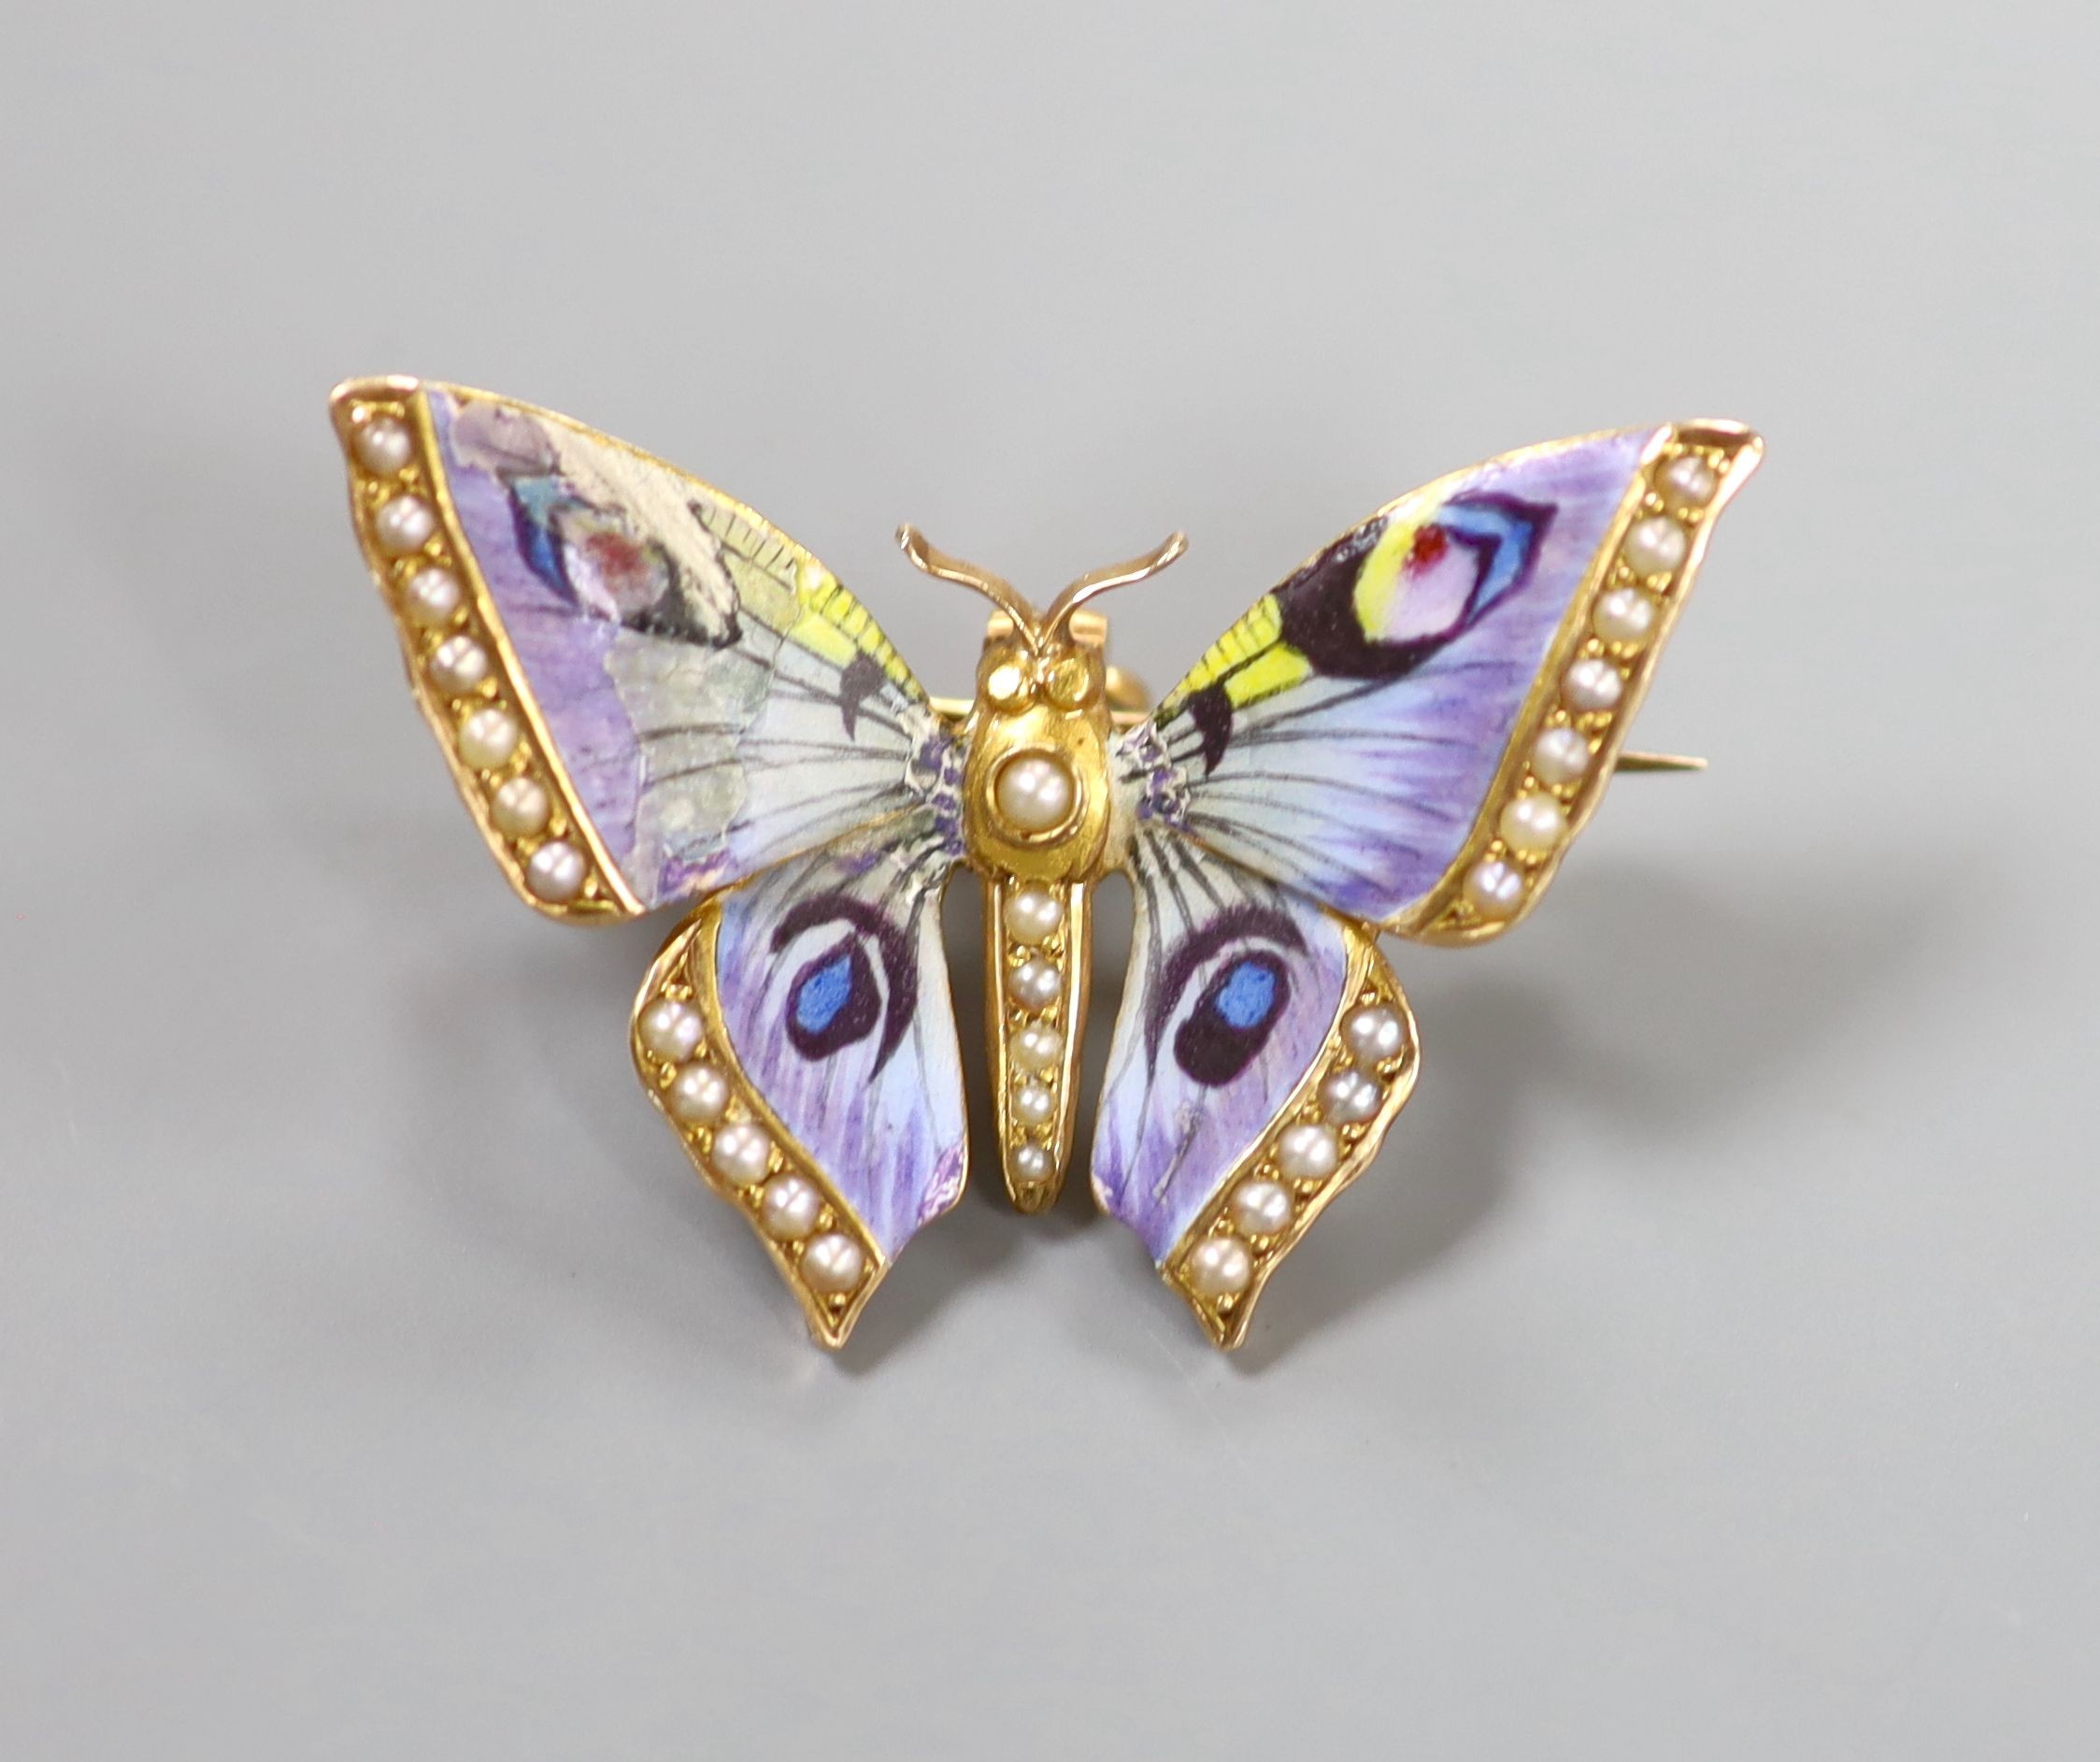 A yellow metal, enamel and split pearl set butterfly pendant brooch (enamel a.f.), 35mm, gross weight 6 grams.